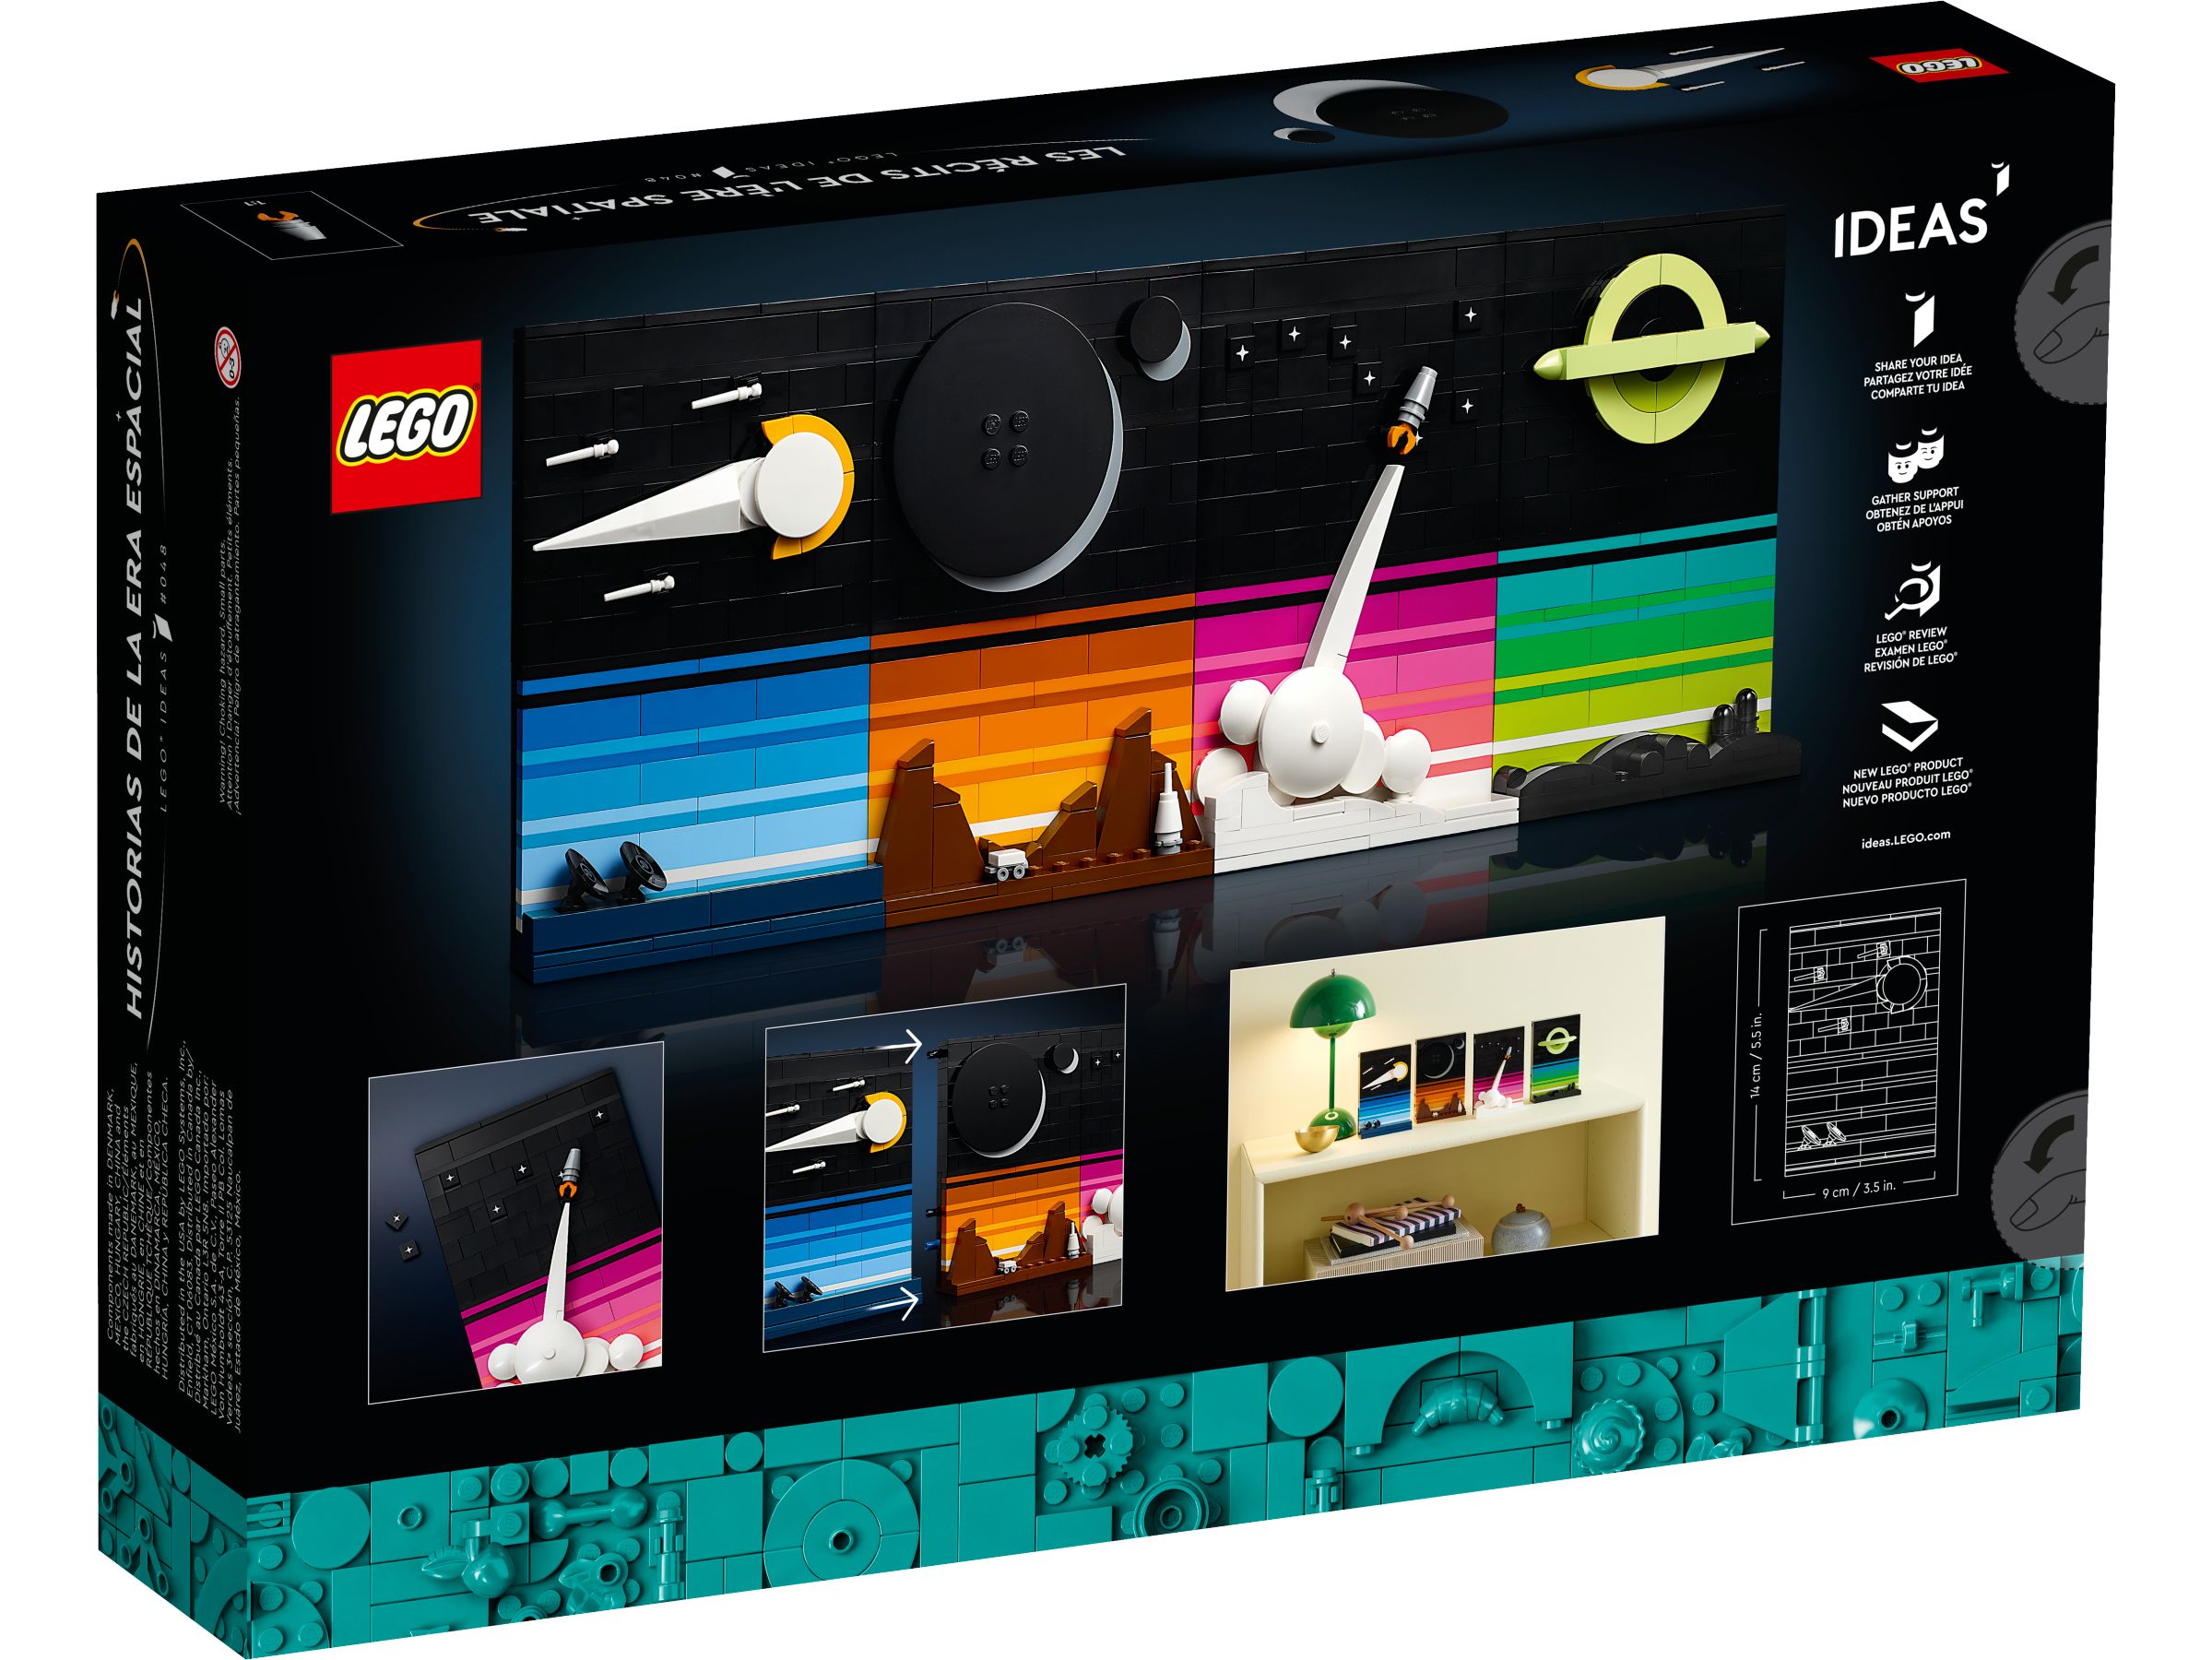 LEGO Ideas 21340 Geschichten aus dem Weltraumzeitalter LEGO_21340_Box5_v39.jpg